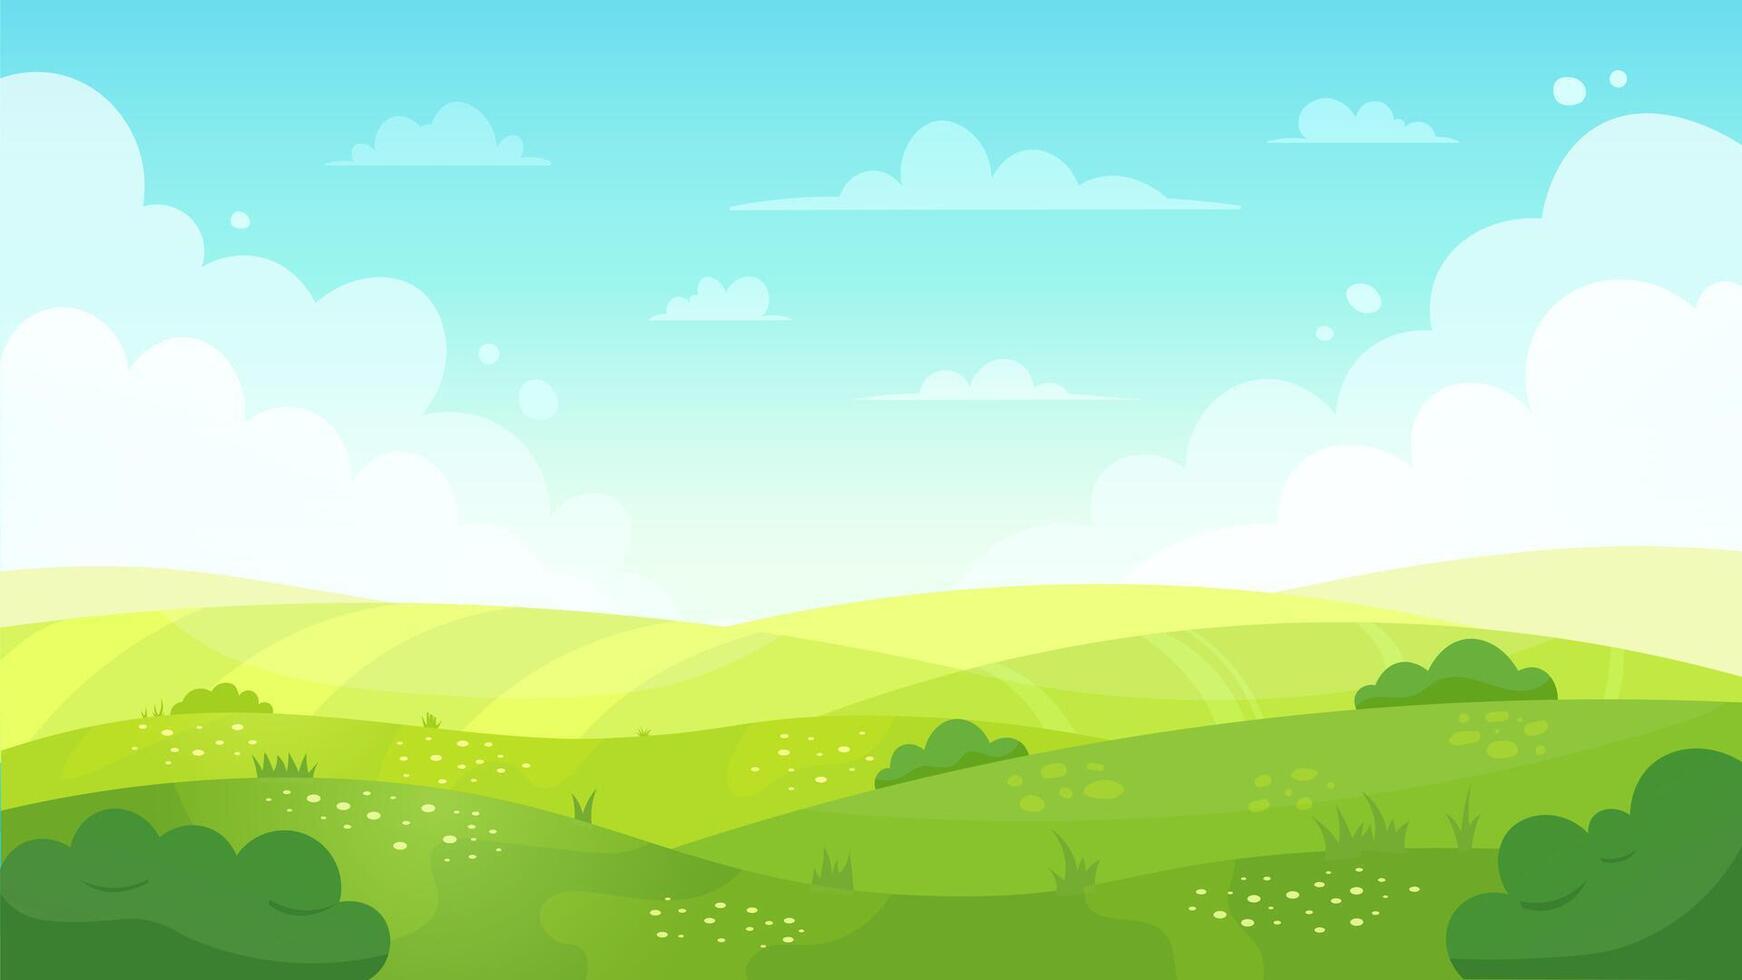 Karikatur Wiese Landschaft. Sommer- Grün Felder Sicht, Frühling Rasen Hügel und Blau Himmel, Grün Gras Felder Landschaft Vektor Hintergrund Illustration